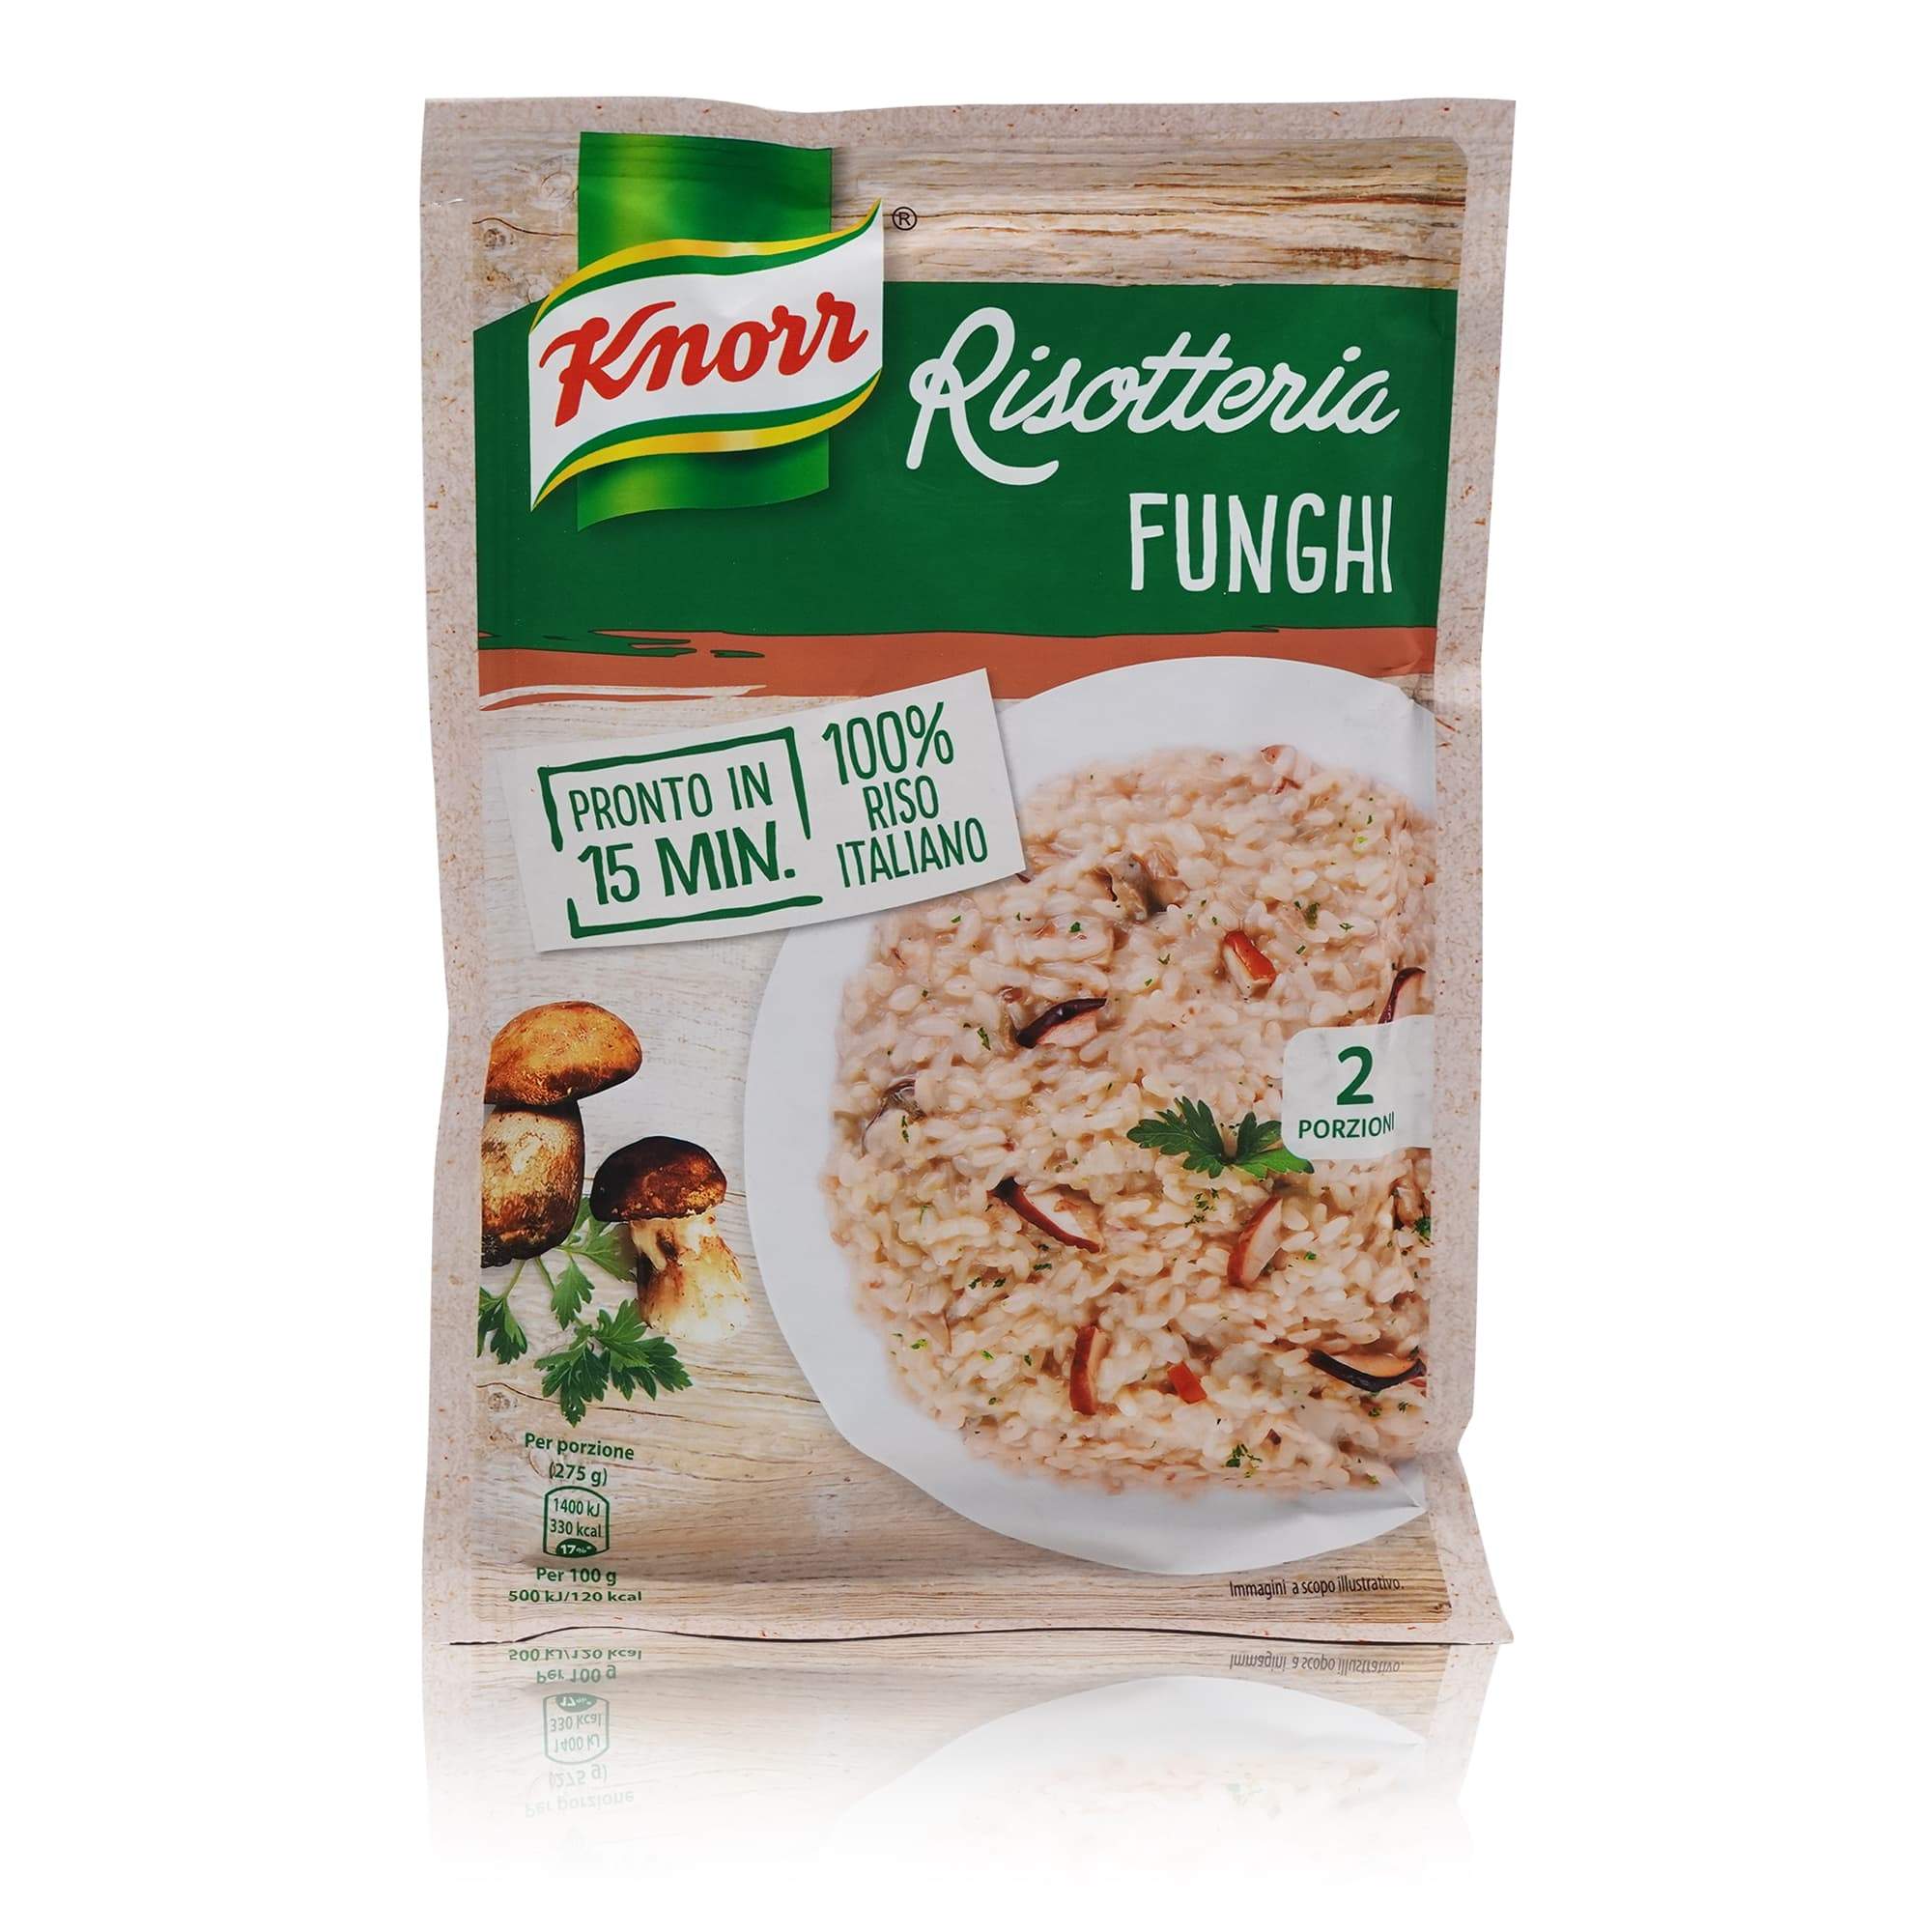 KNORR Risotto Funghi - Pilze - 0,175kg - italienisch-einkaufen.de